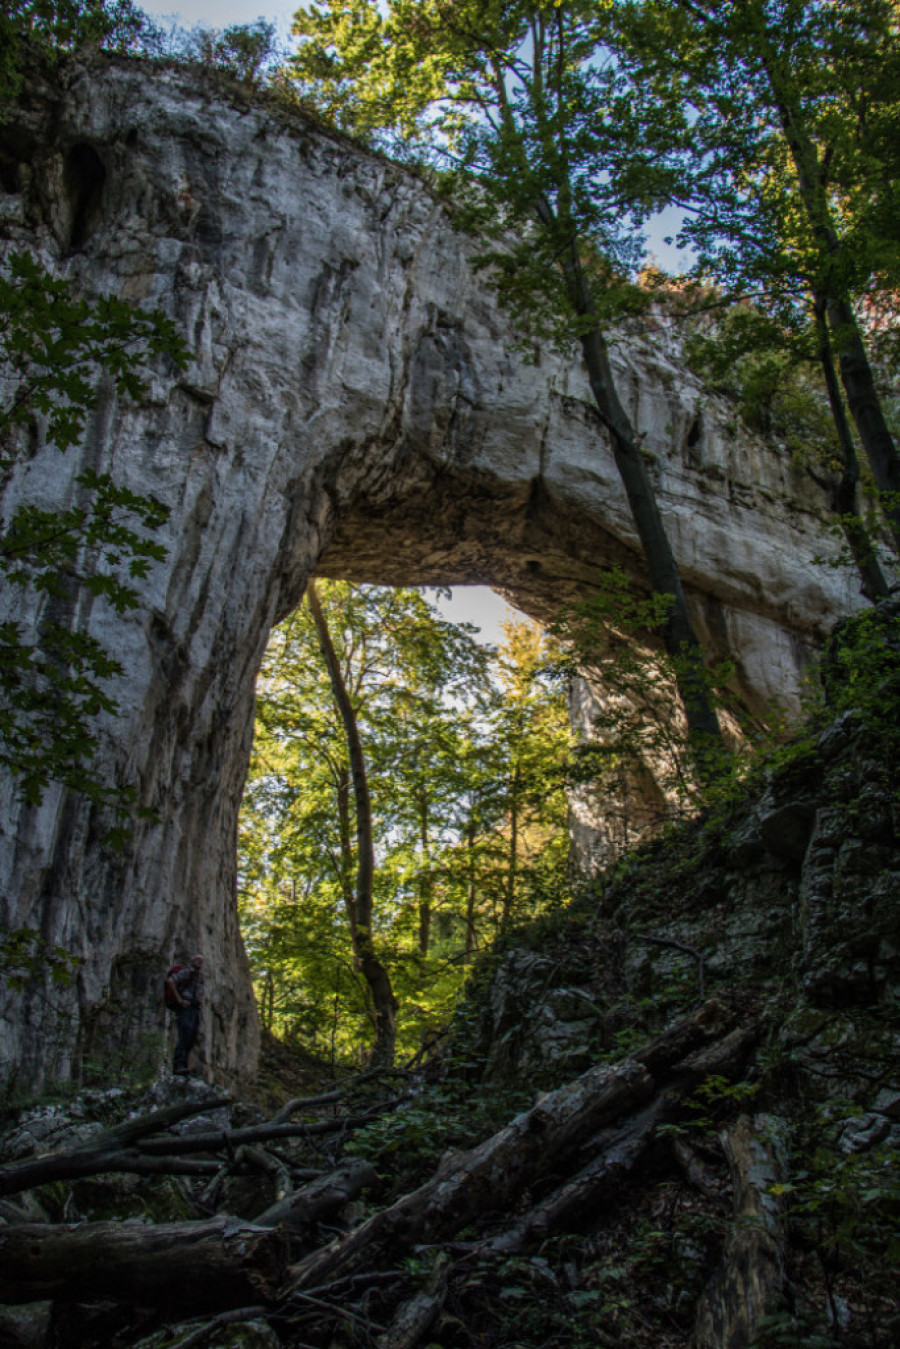 PRIRODNI KAMENI MOST Ostaci pećine kroz koju je nekada proticala reka, danas predstavlja pravu atrakciju za sve ljubitelje prirode